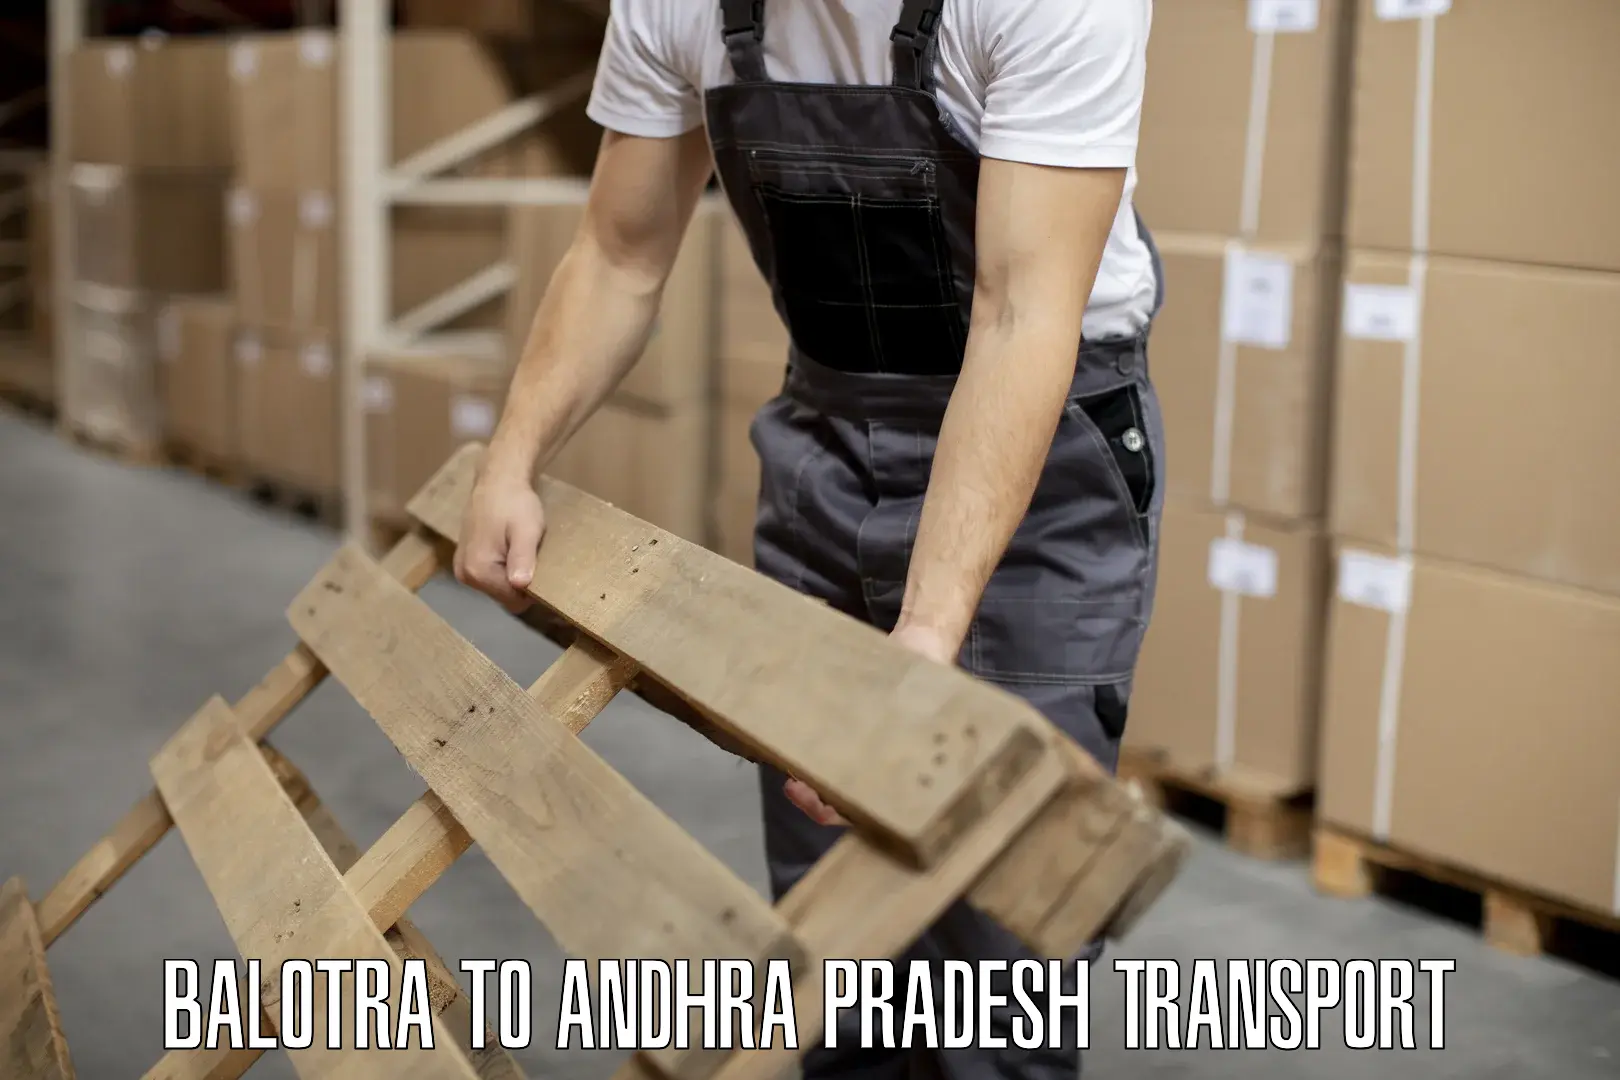 Delivery service Balotra to Andhra Pradesh